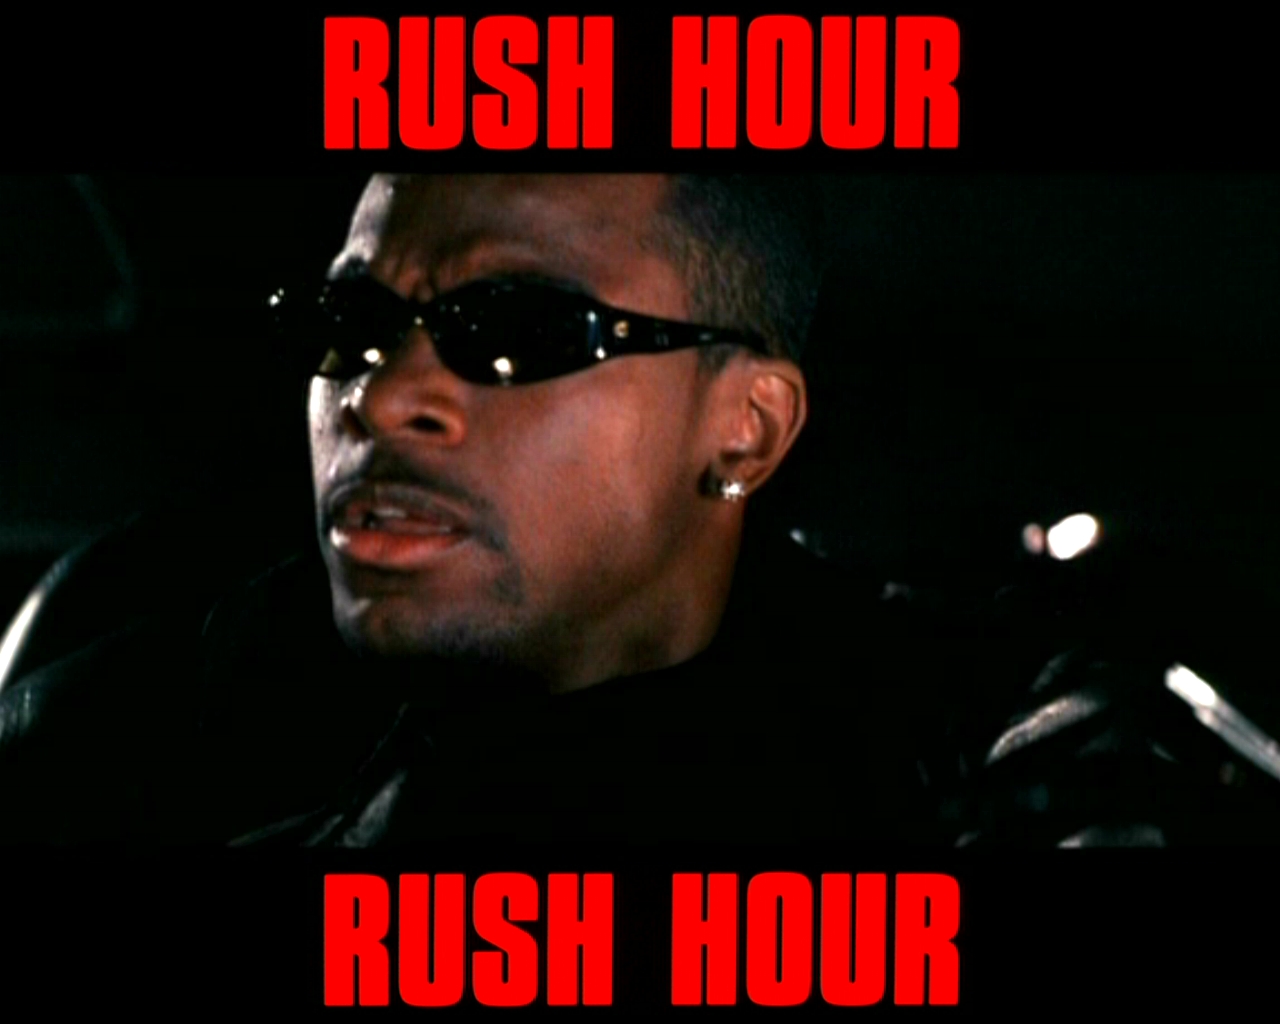 Rush hour 2